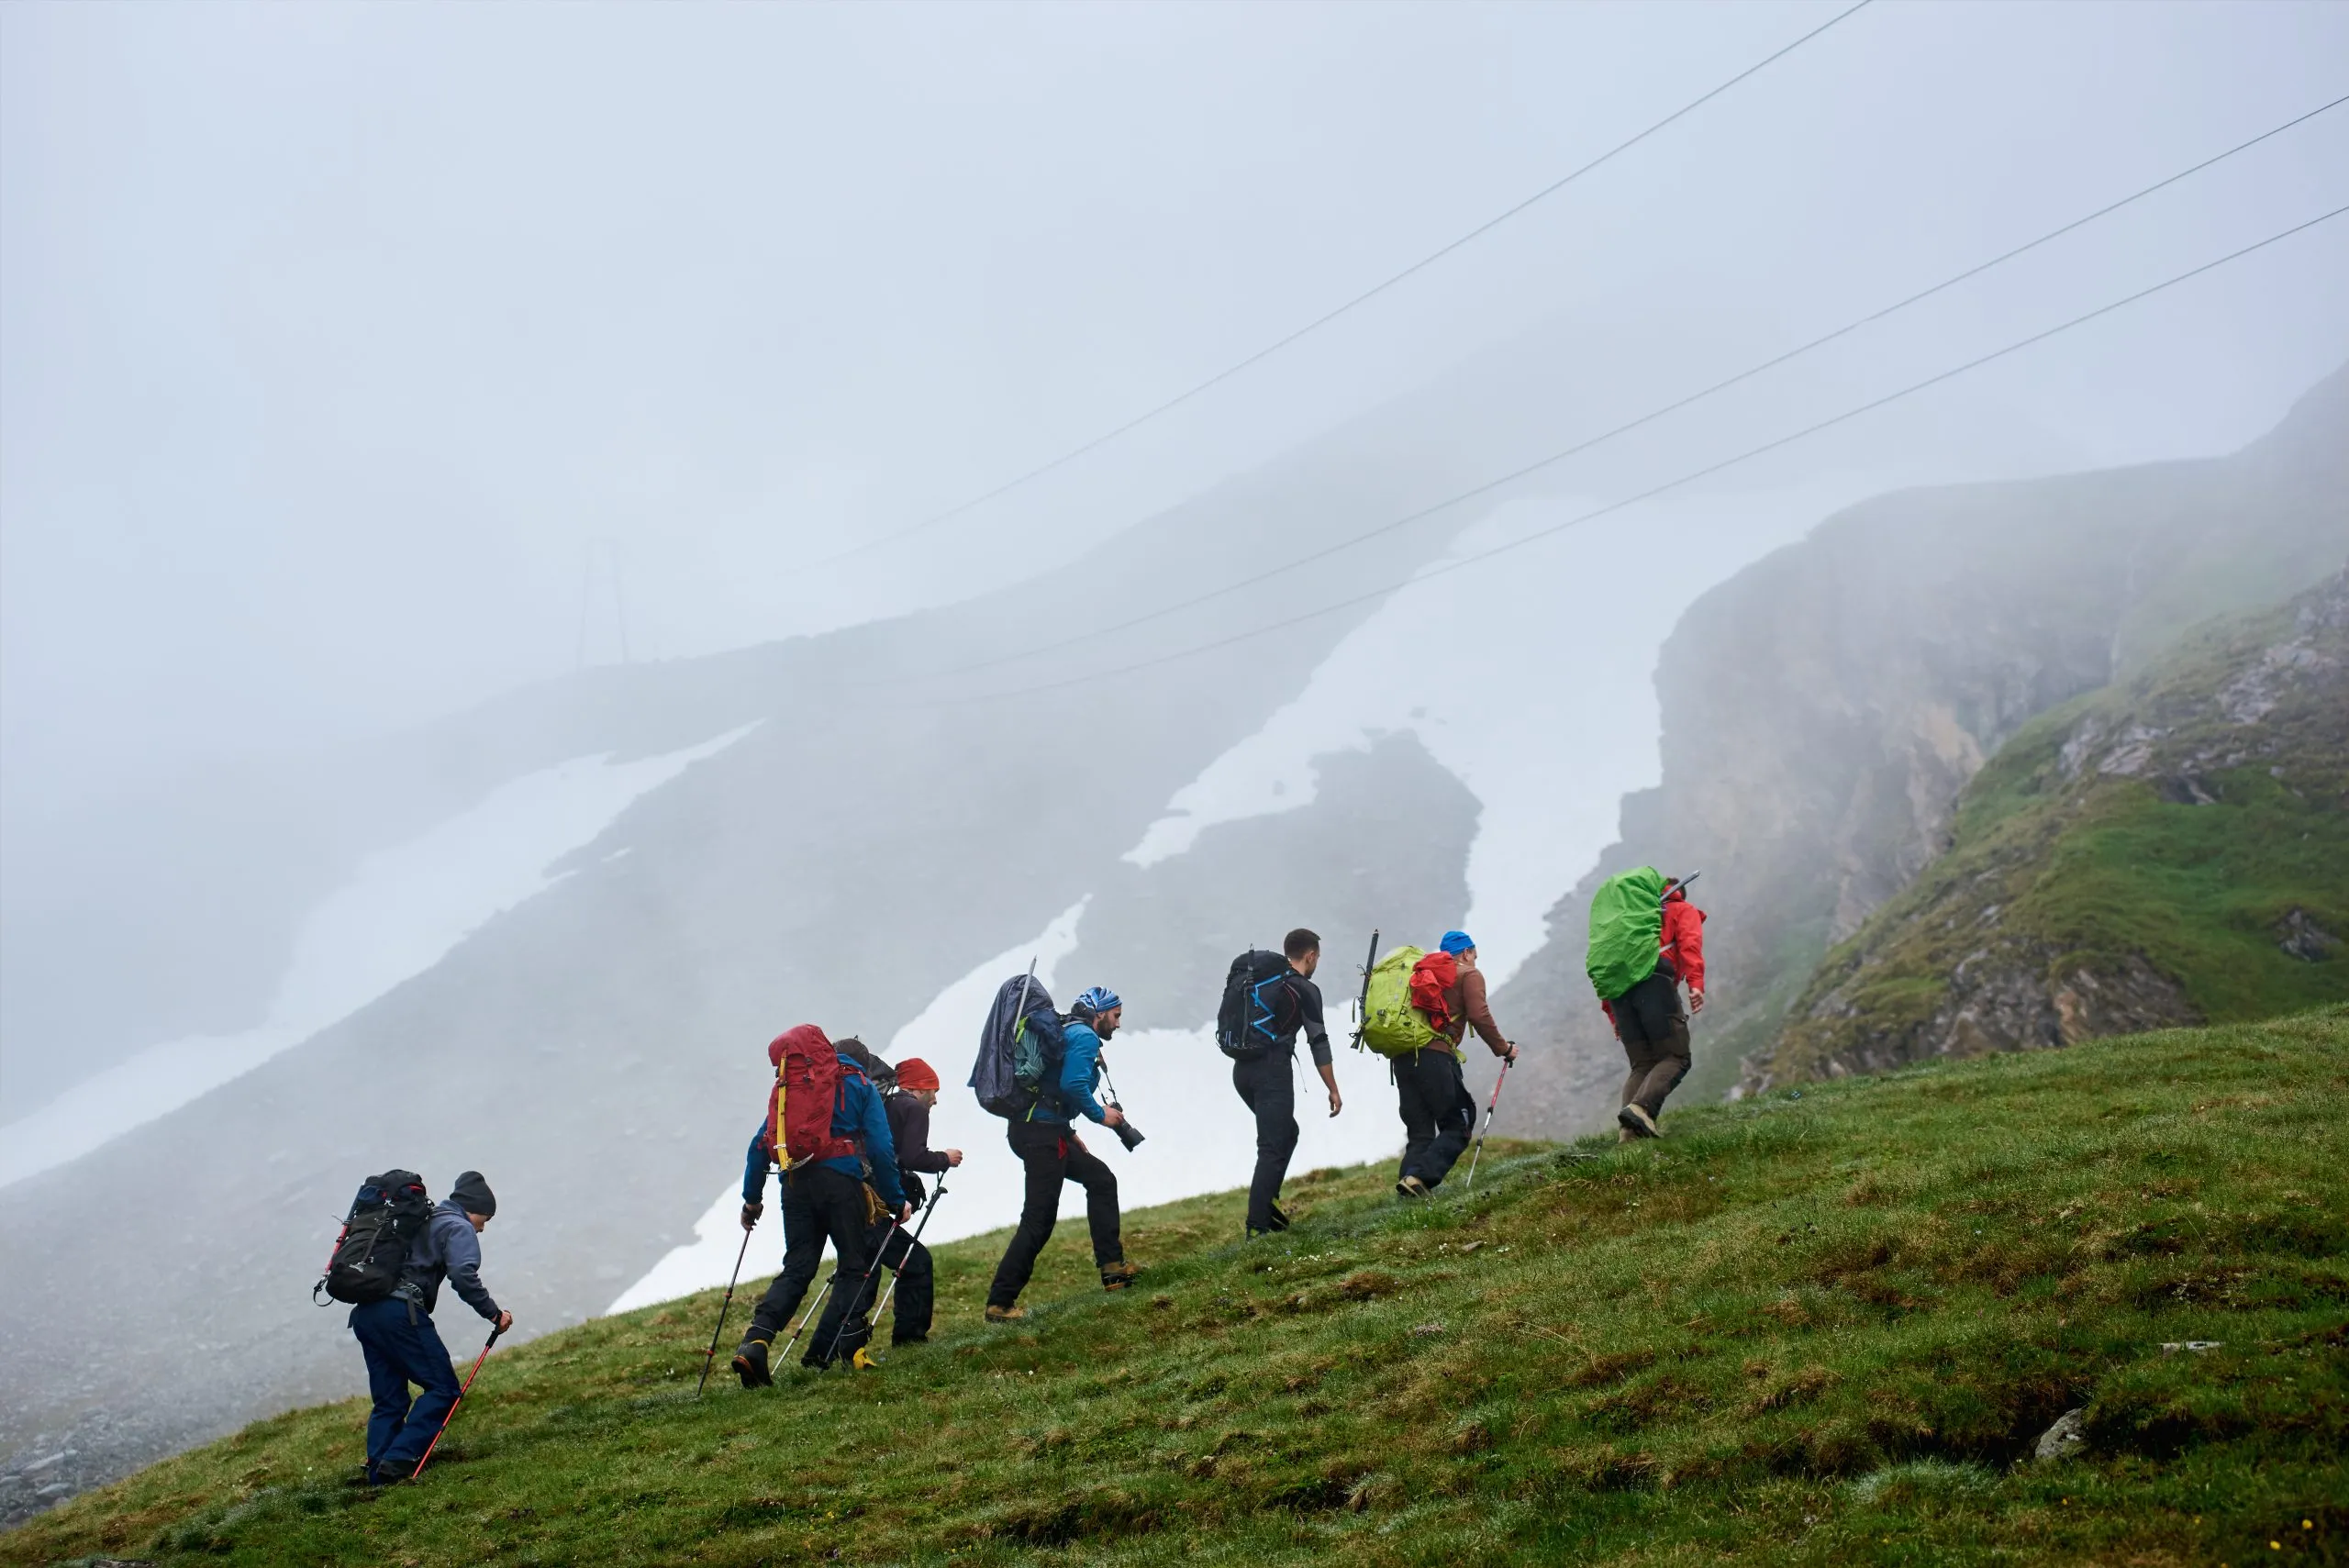 Rückenansicht von männlichen Wanderern mit Rucksäcken klettern grasbewachsenen Hügel. Junge Touristen zu Fuß bergauf in den Bergen mit nebligen Felsen auf dem Hintergrund. Konzept des Wanderns, Reisen und Rucksacktourismus.